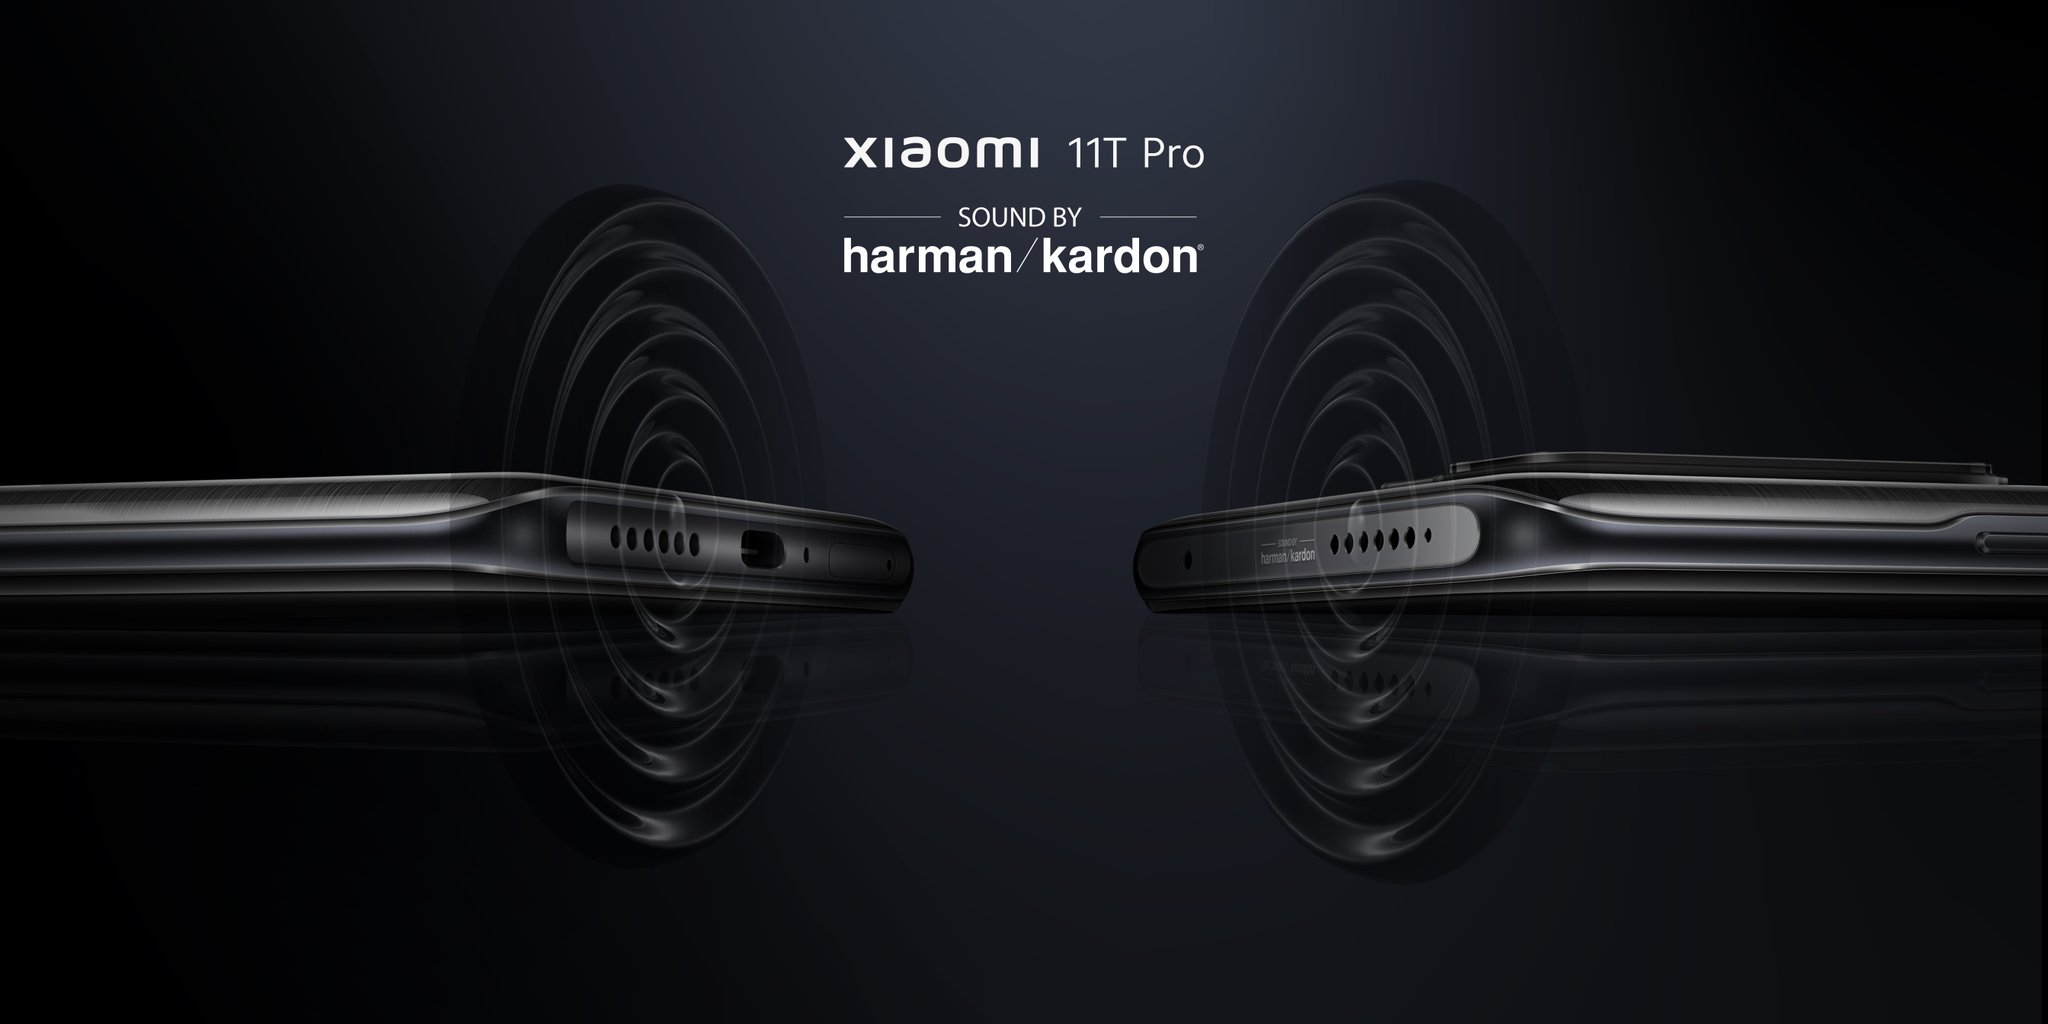 Xiaomi 11T Pron stereokaiuttimet kantavat Harman Kardon -brändäystä.